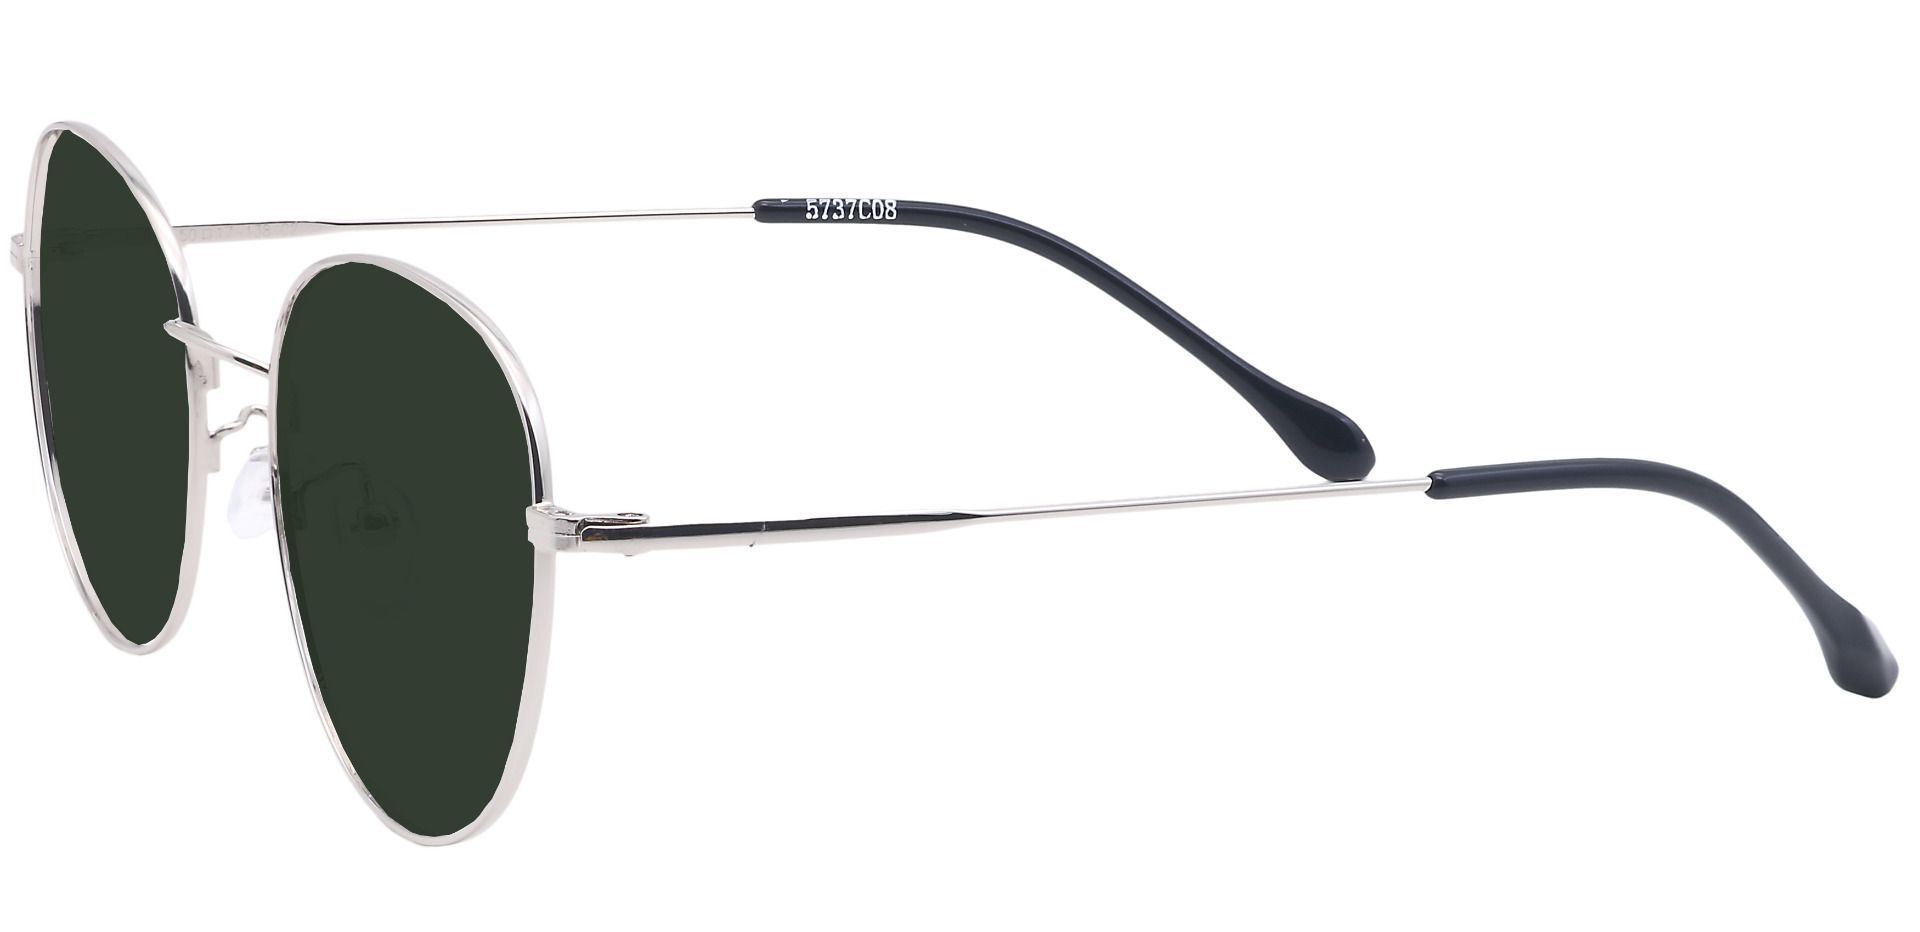 Miller Oval Progressive Sunglasses - Gray Frame With Green Lenses